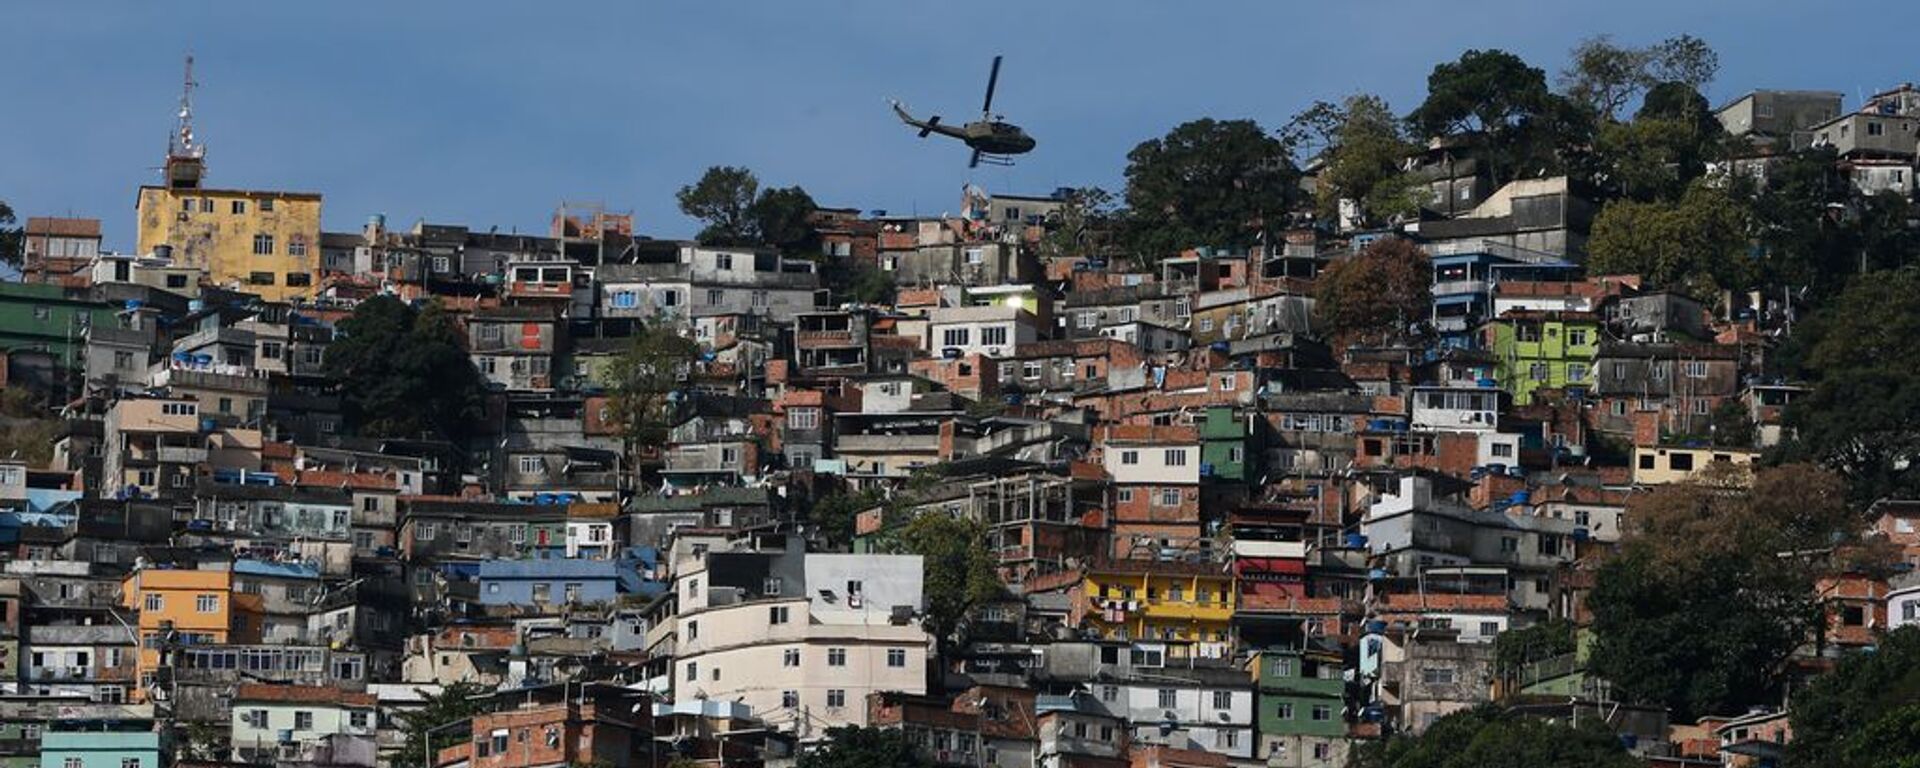 Operação policial na favela da Rocinha, no Rio de Janeiro. Policiais militares fazem operação na favela da Rocinha após guerra entre quadrilhas rivais de traficantes pelo controle da área. - Sputnik Brasil, 1920, 08.10.2021